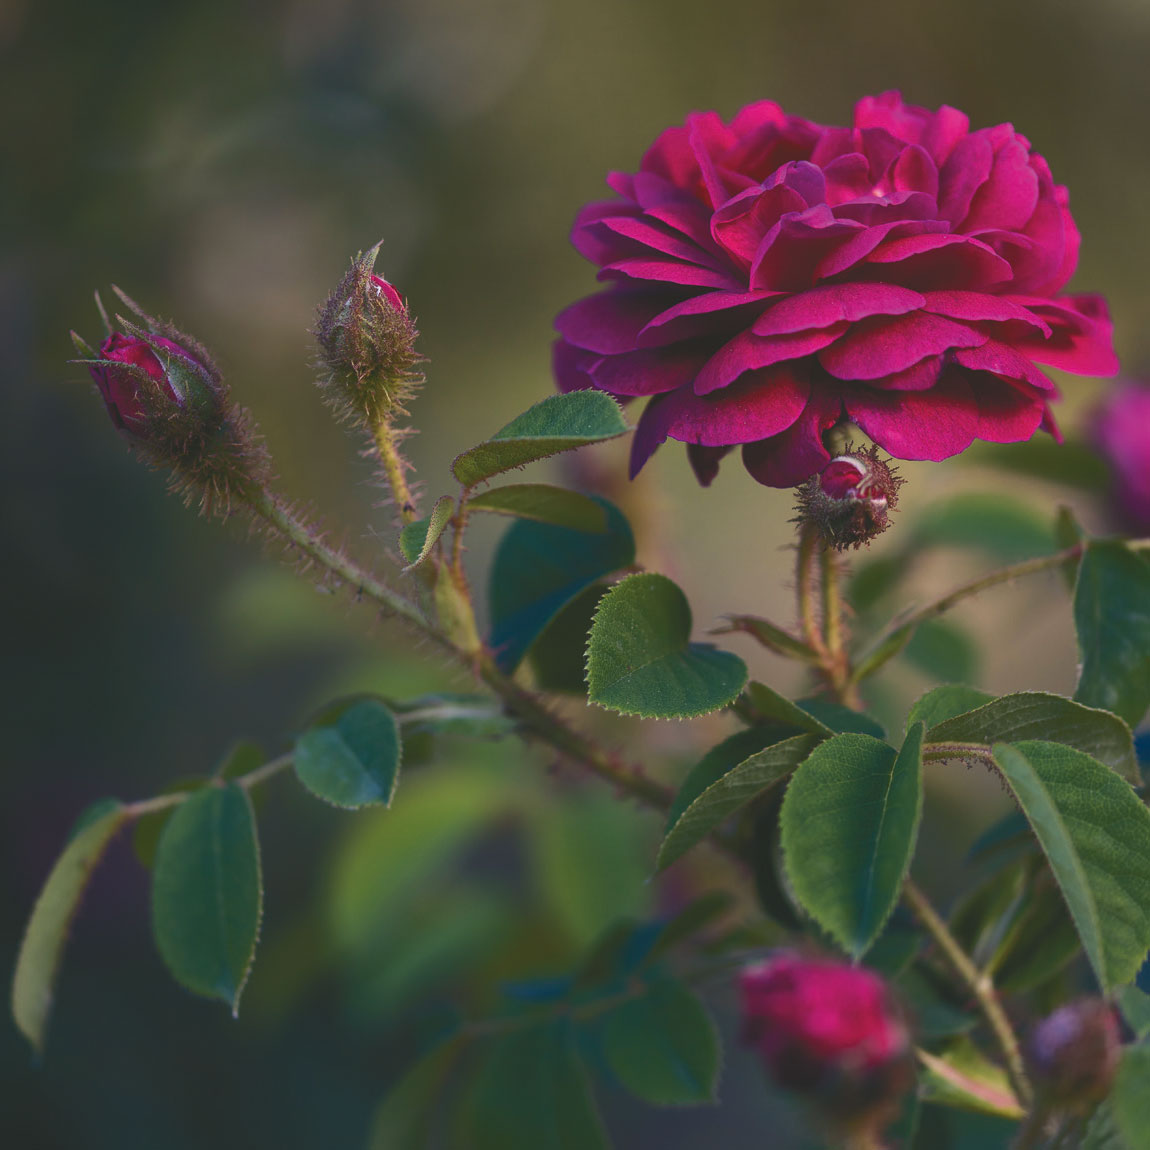 Coltura meristematica: come usare il potere antiage di una rosa rarissima senza toccare neanche un petalo